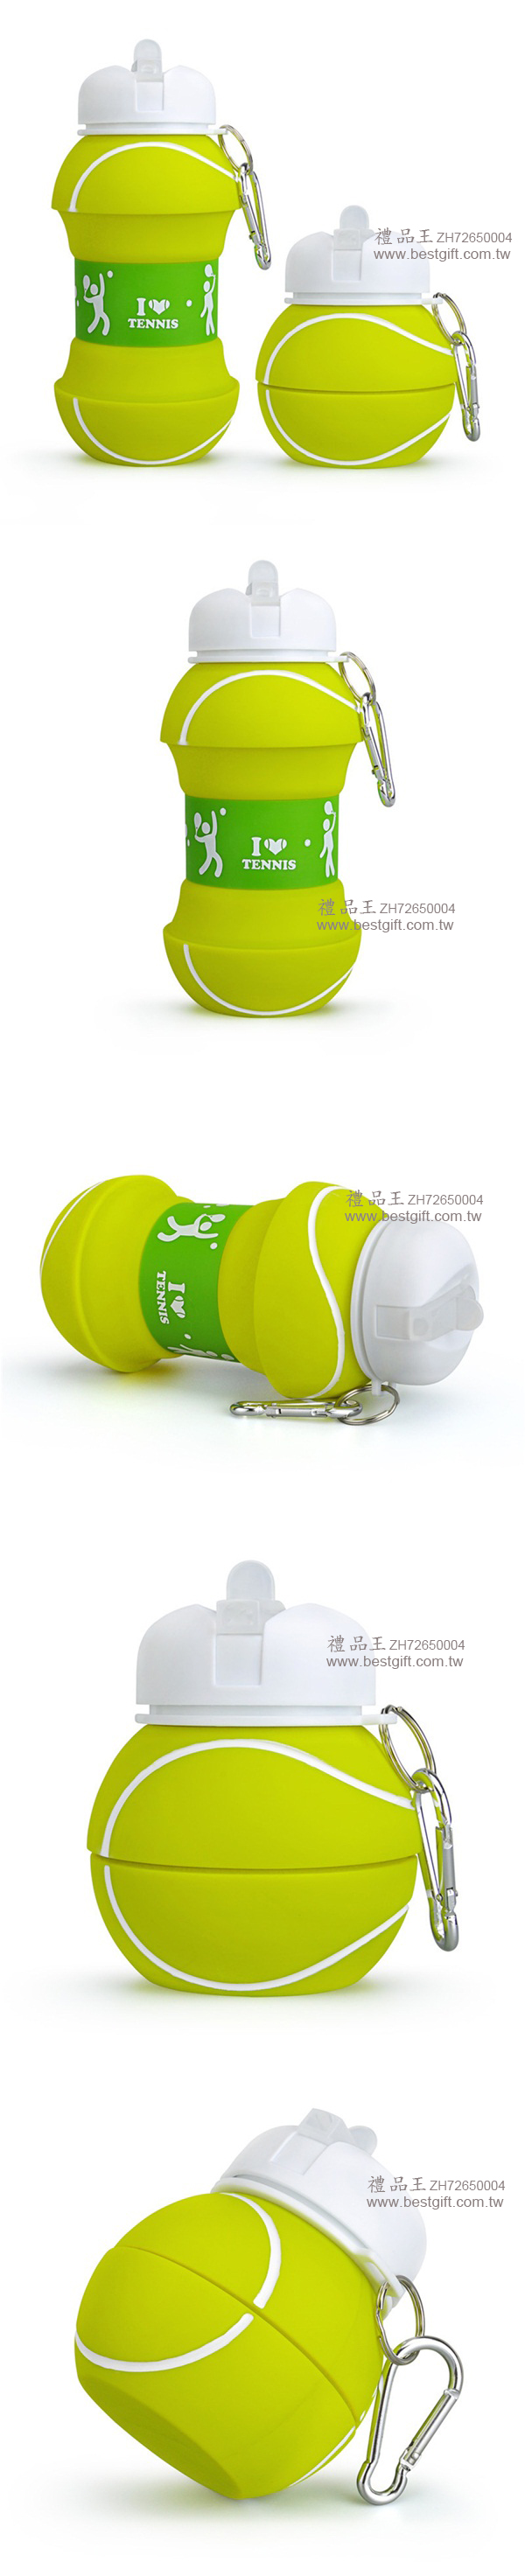 網球造型硅膠伸縮水壺   商品貨號: ZH72650004 